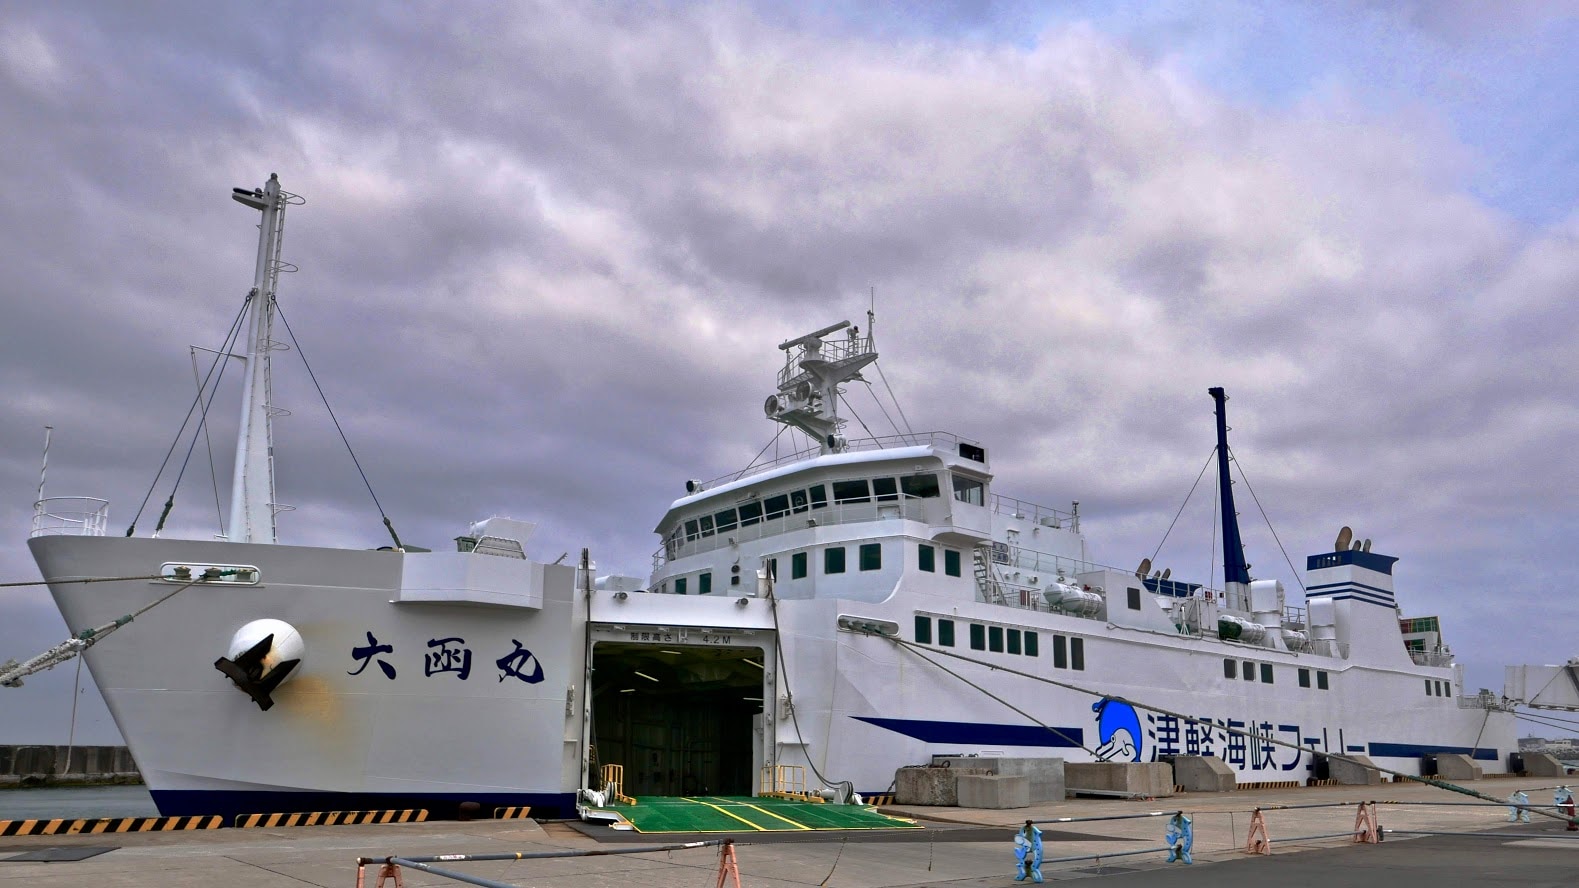 函館から大間へ 津軽海峡フェリー ノスタルジック航路で行く下北半島の旅 Skyticket 観光ガイド